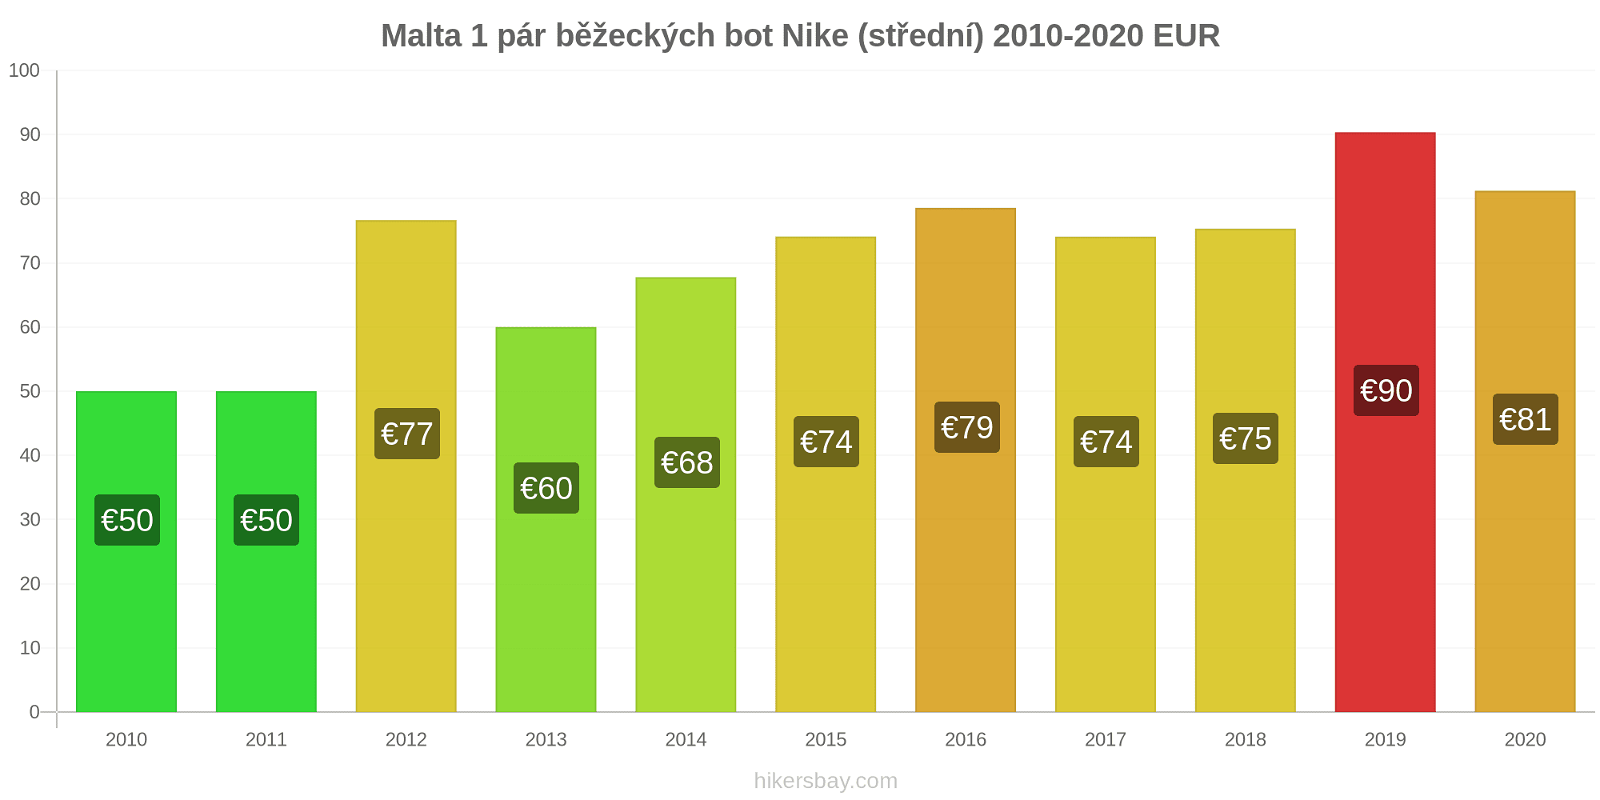 Malta změny cen 1 pár běžeckých bot Nike (střední) hikersbay.com